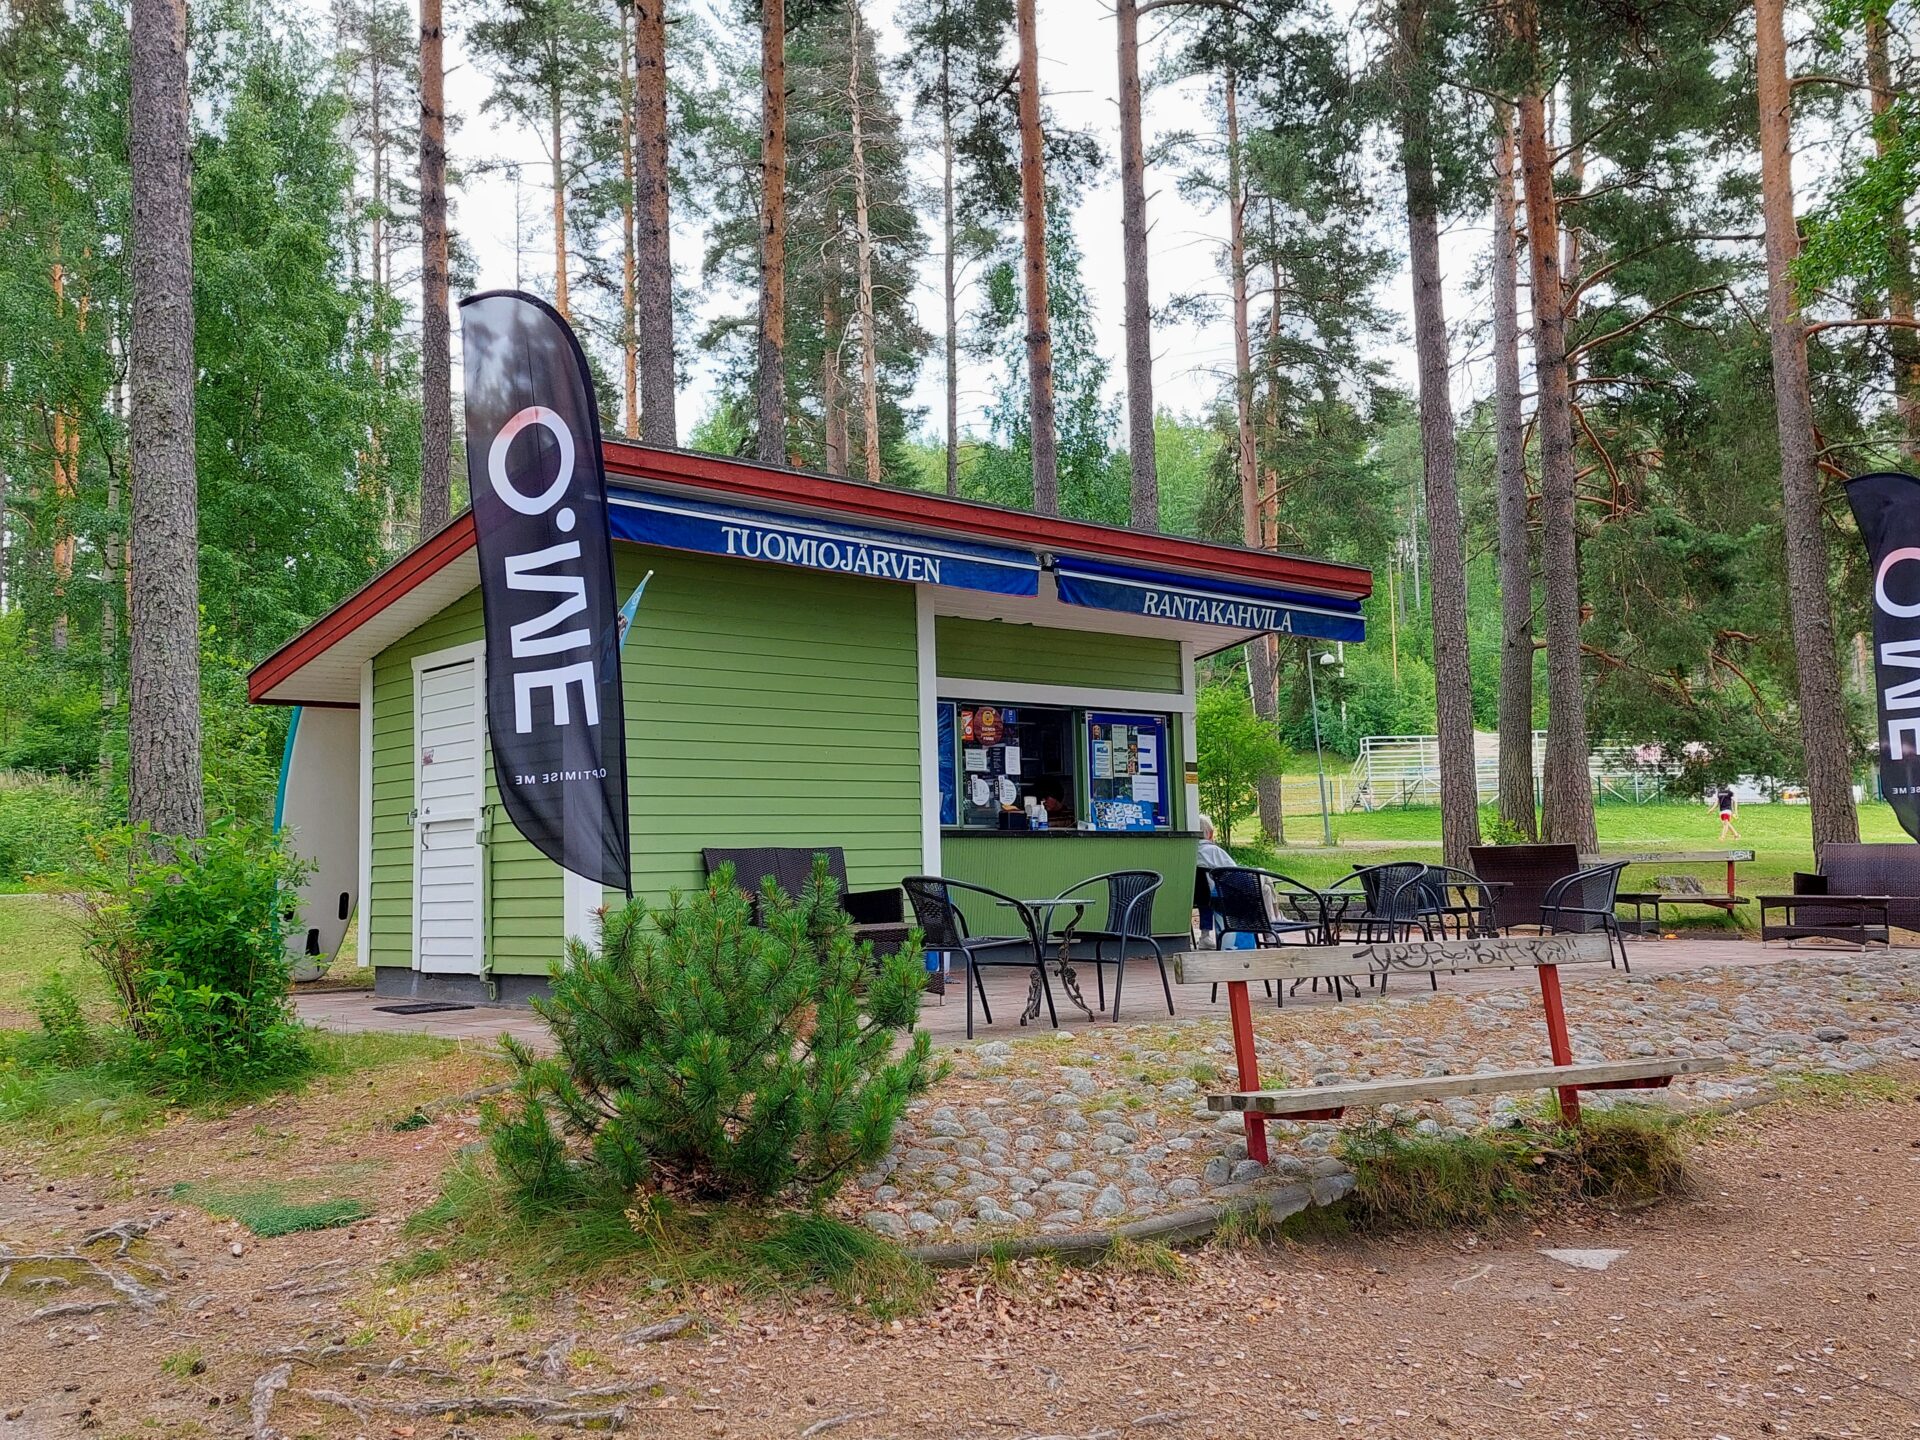 Tuomiojärven kioski, vihreä puurakennus, mäntyjä ympärillä